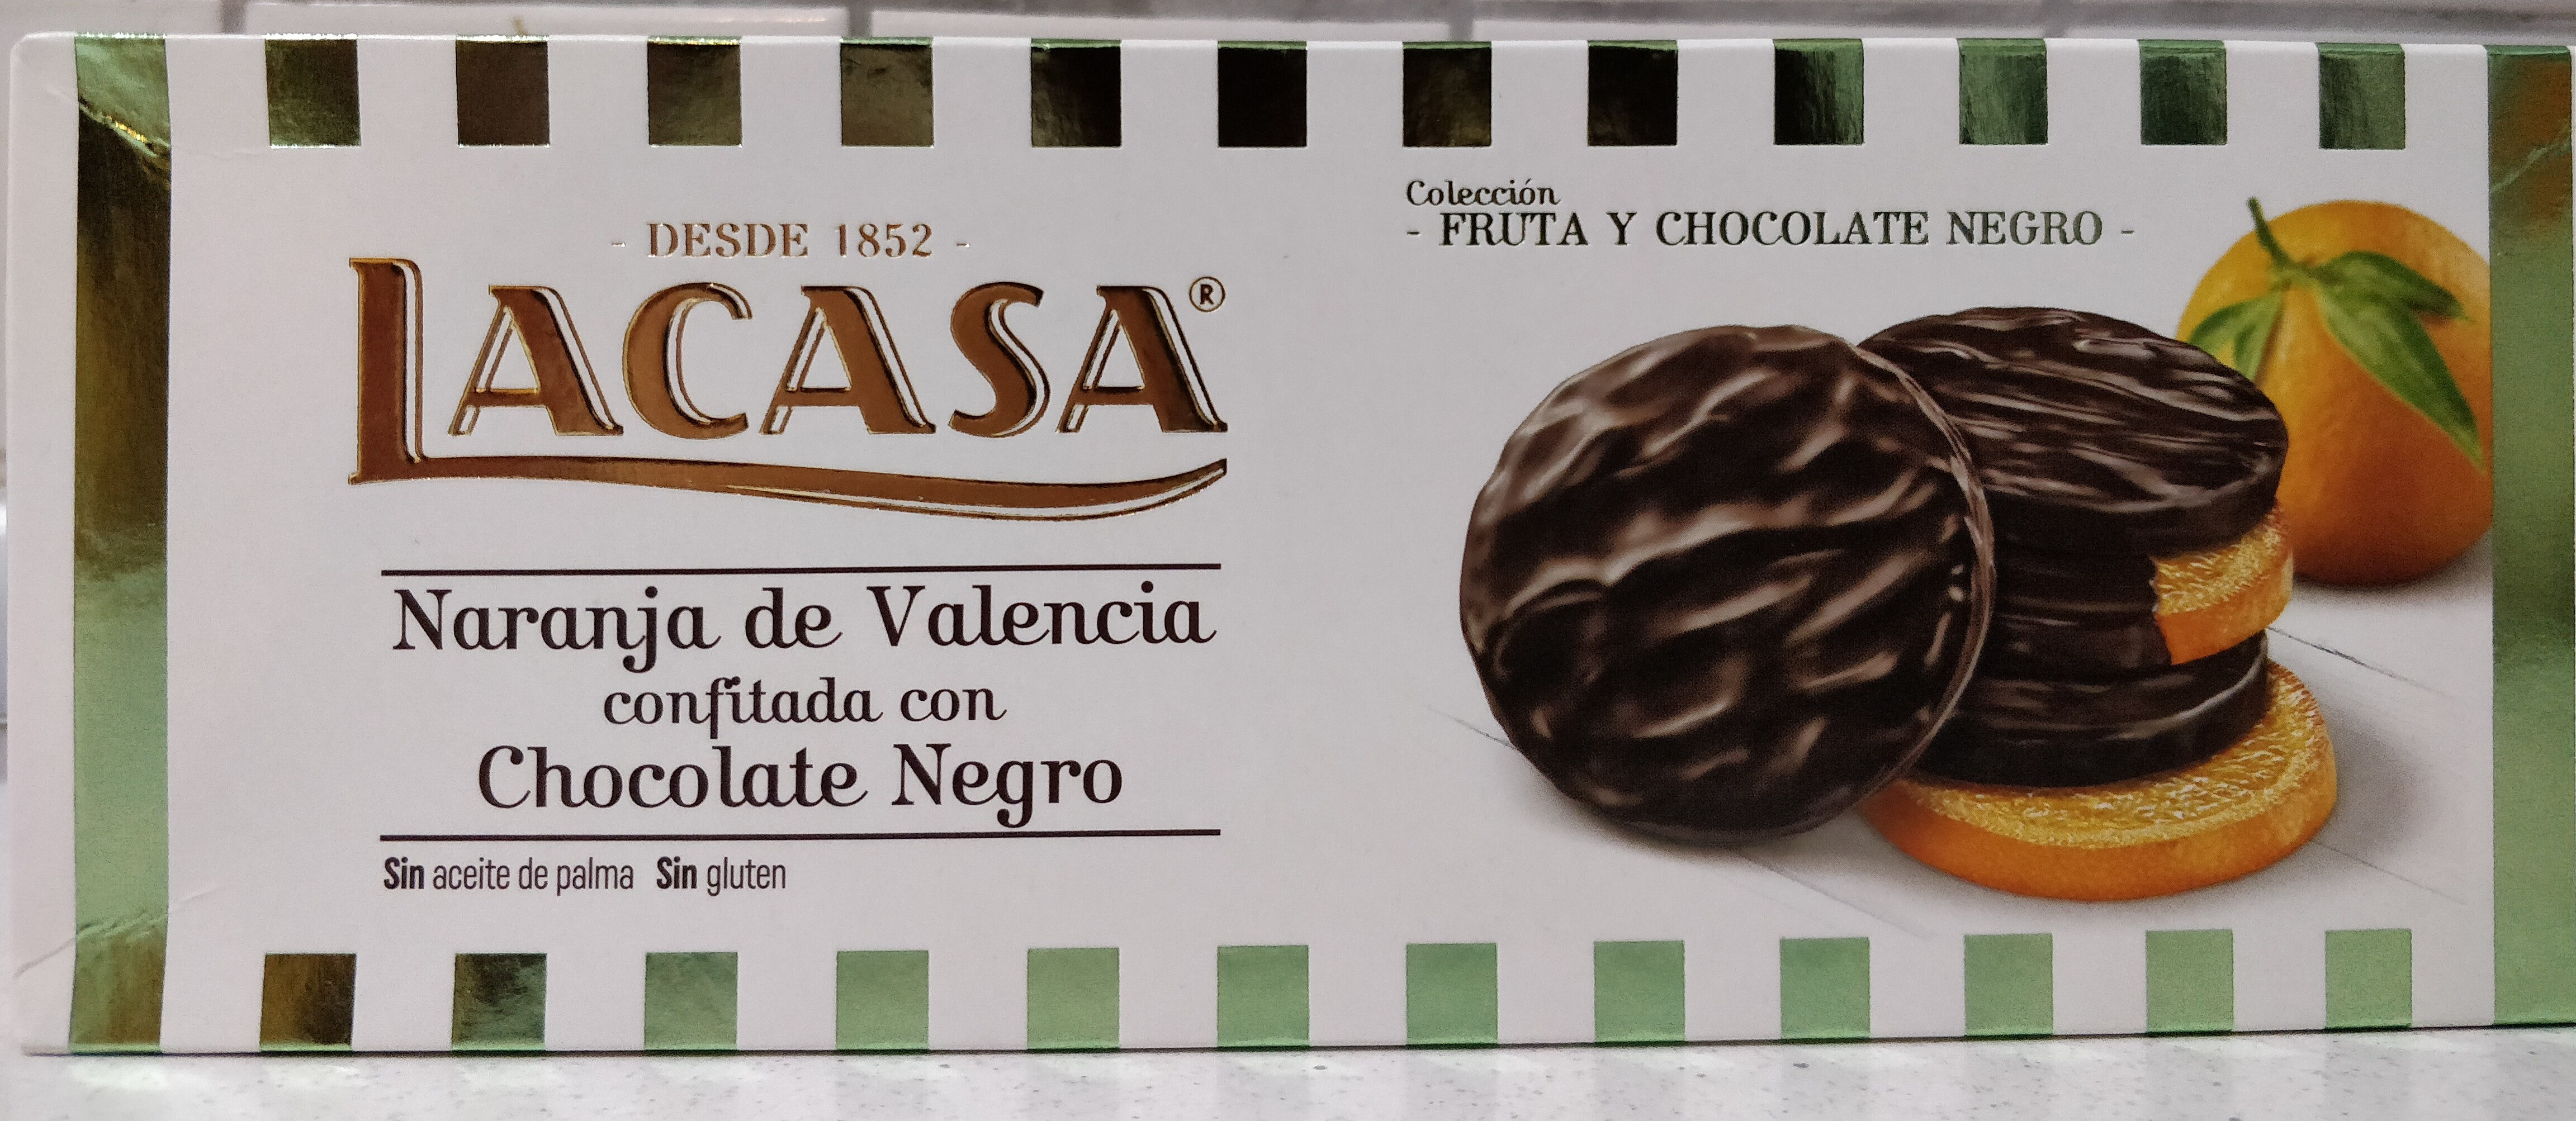 Naranja de Valencia confitada con Chocolate Negro - Product - es